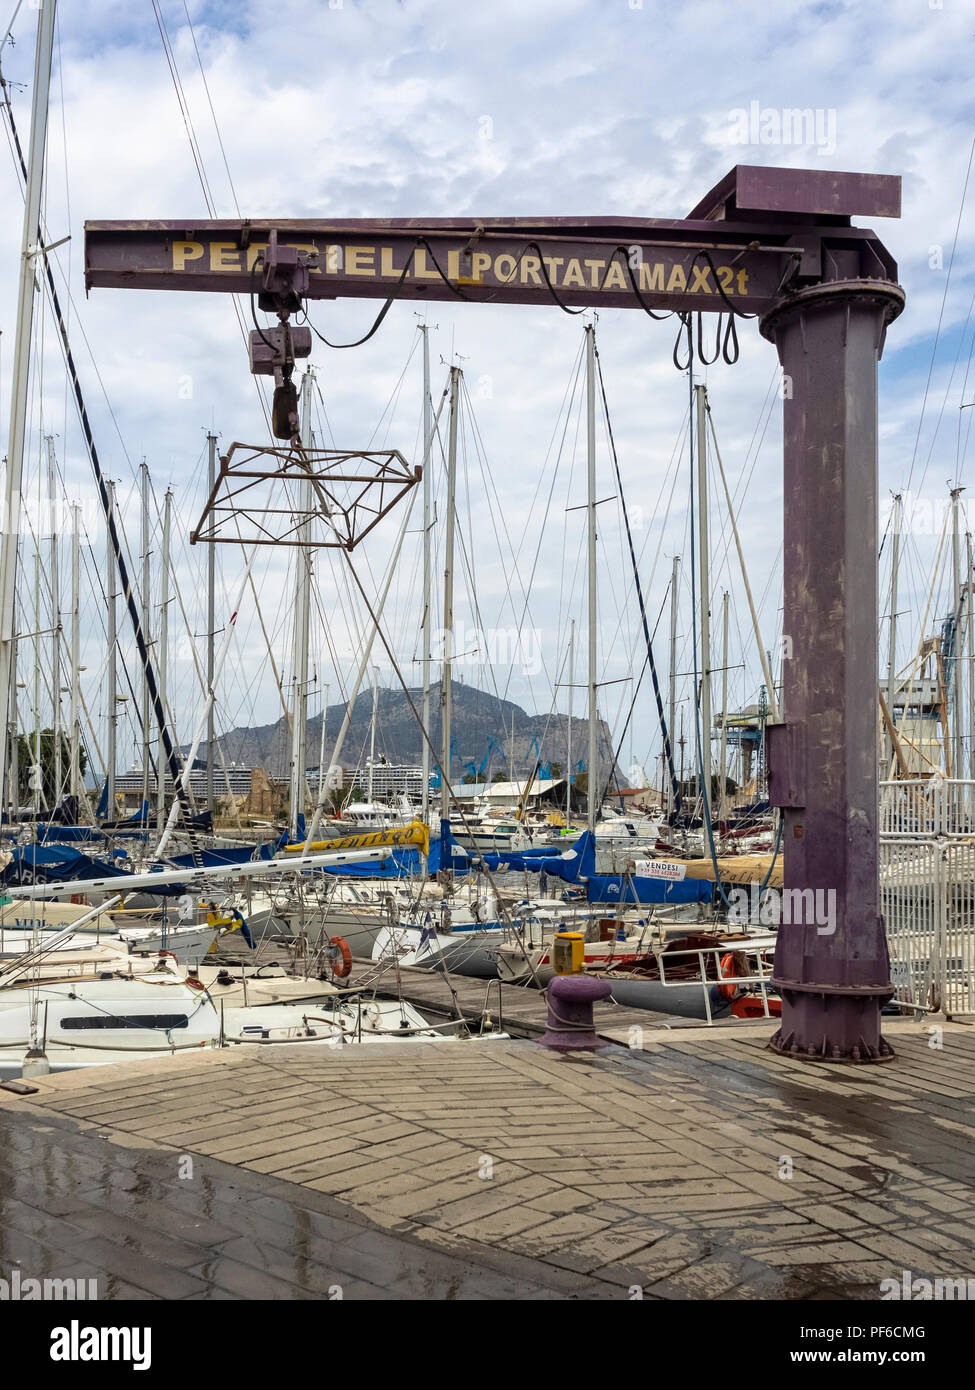 PALERME, SICILE, ITALIE - 21 MAI 2018: Yachts dans le port de plaisance du Vieux Port (la Cala) Banque D'Images